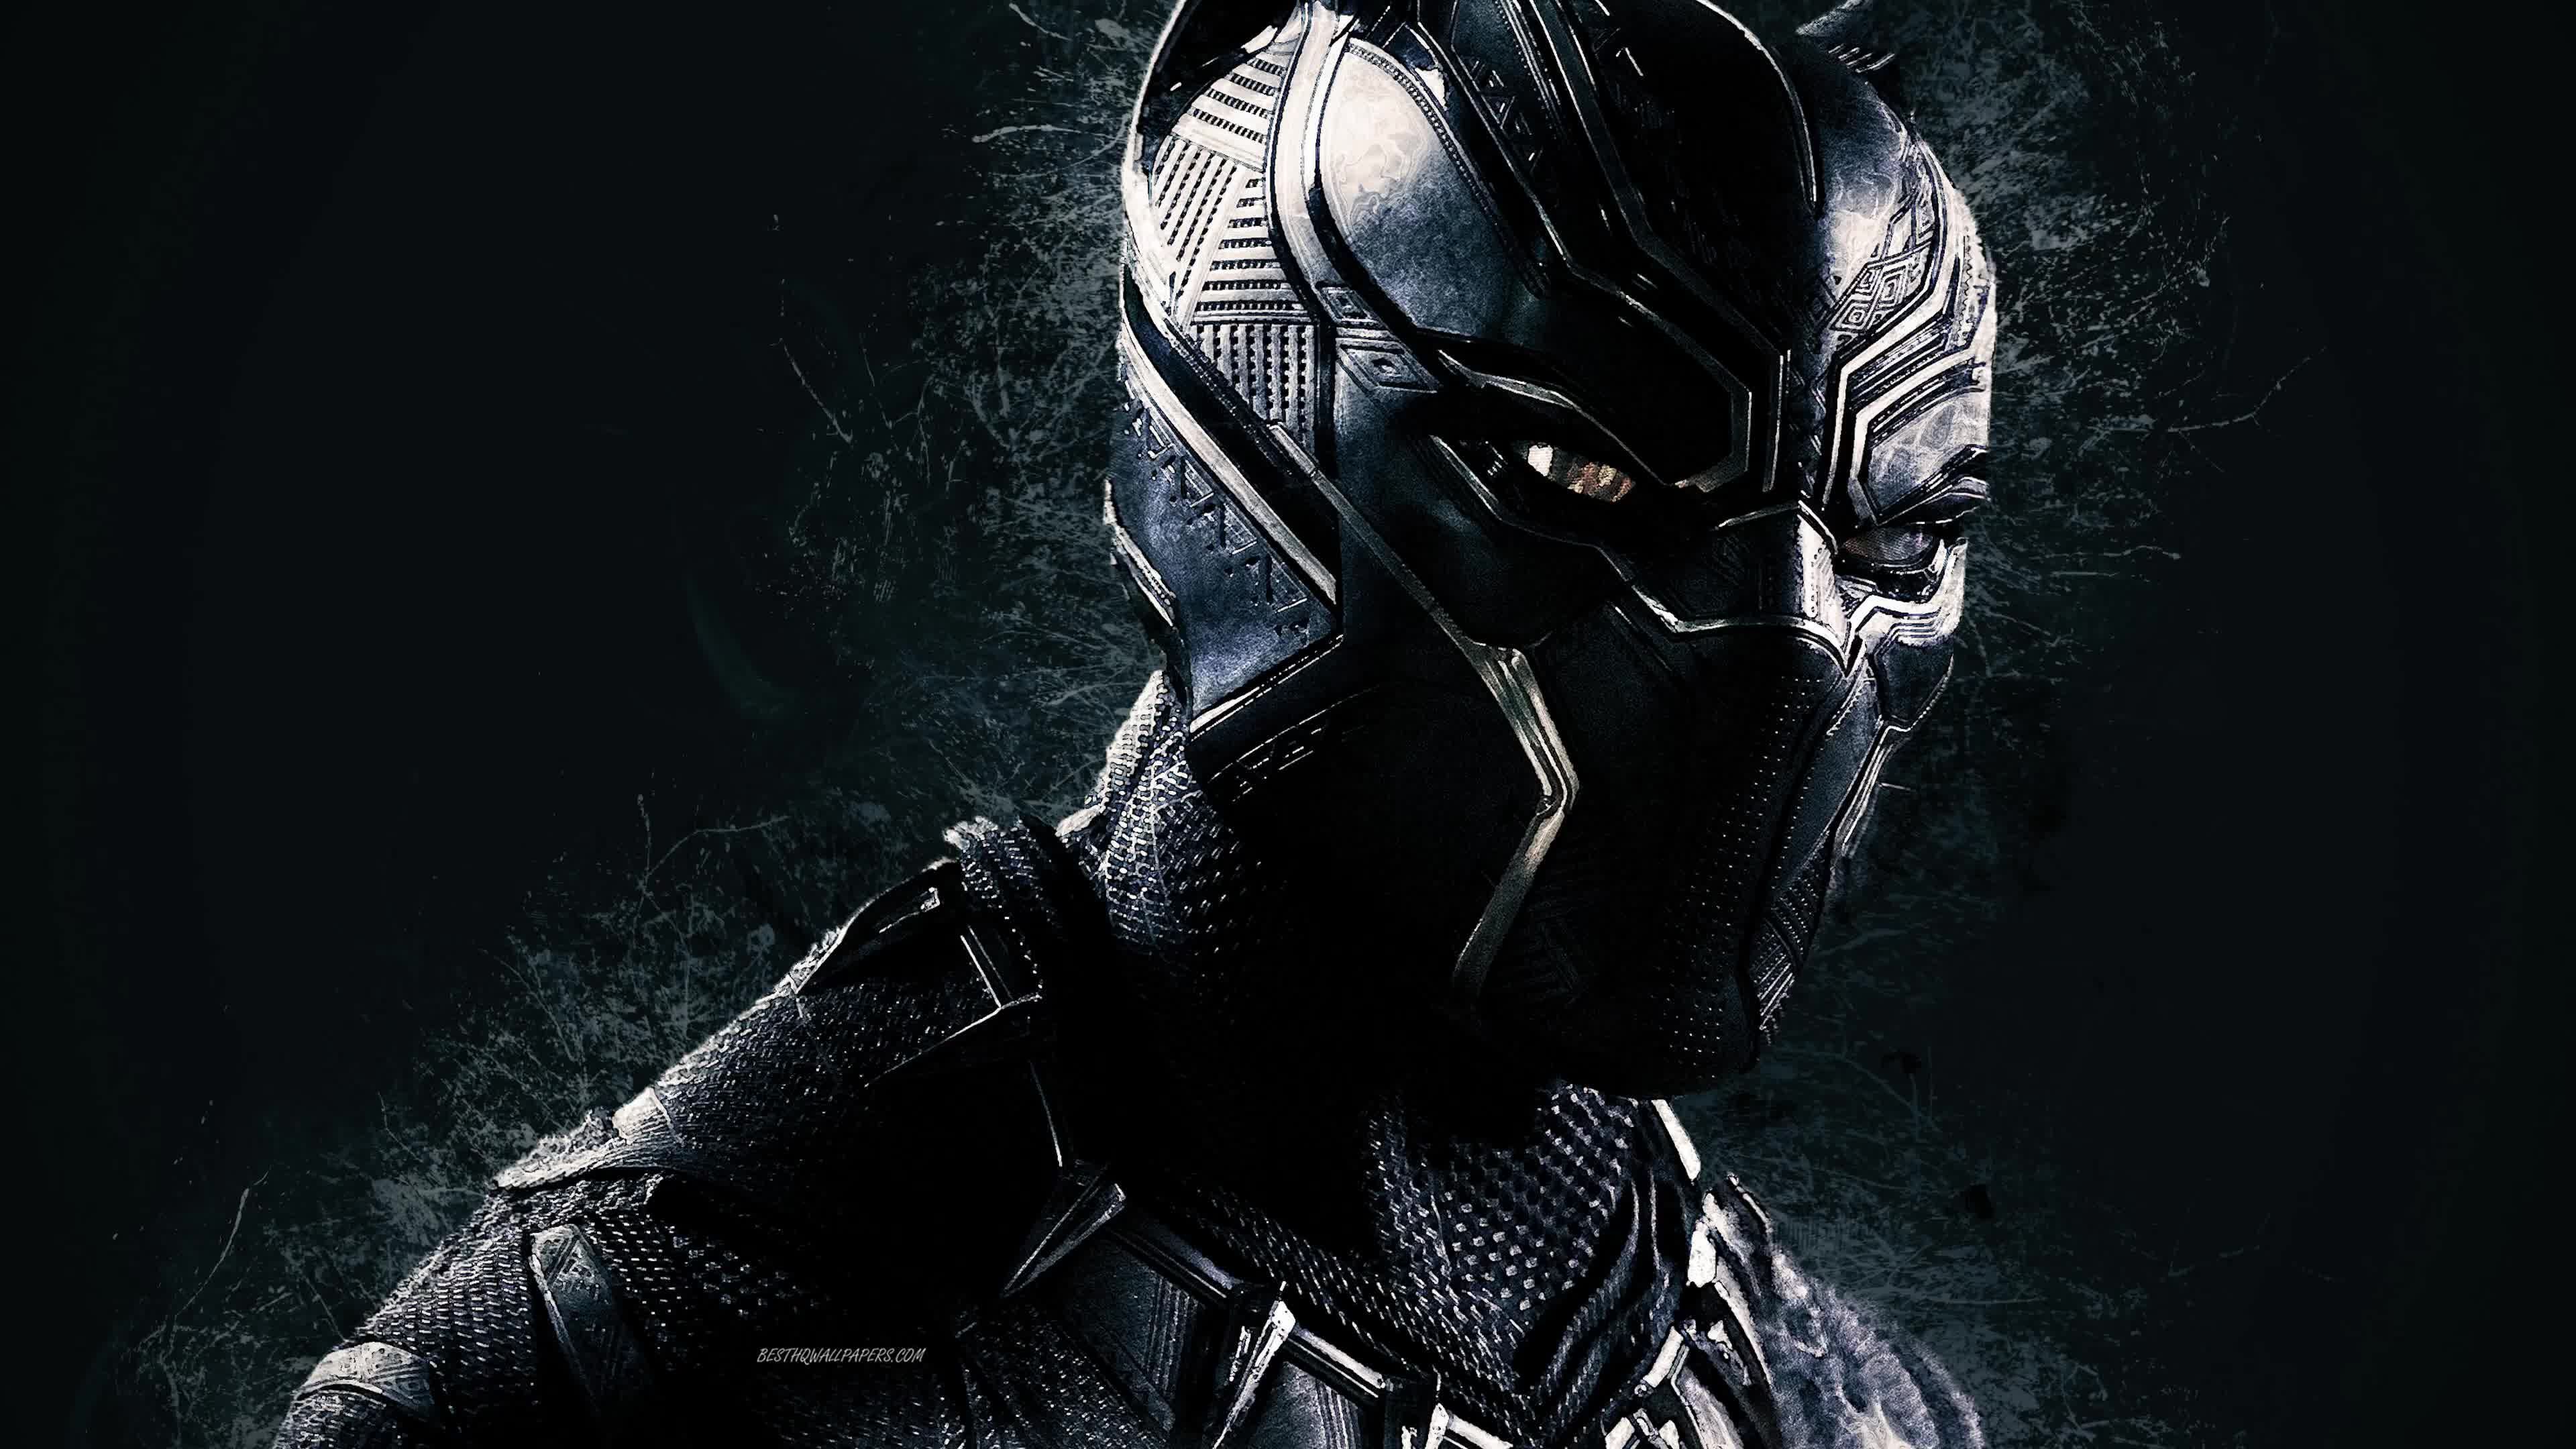 Marvel Black Panther 4K Live Wallpaper in 2020k wallpaper for pc, Wallpaper pc, Gaming wallpaper